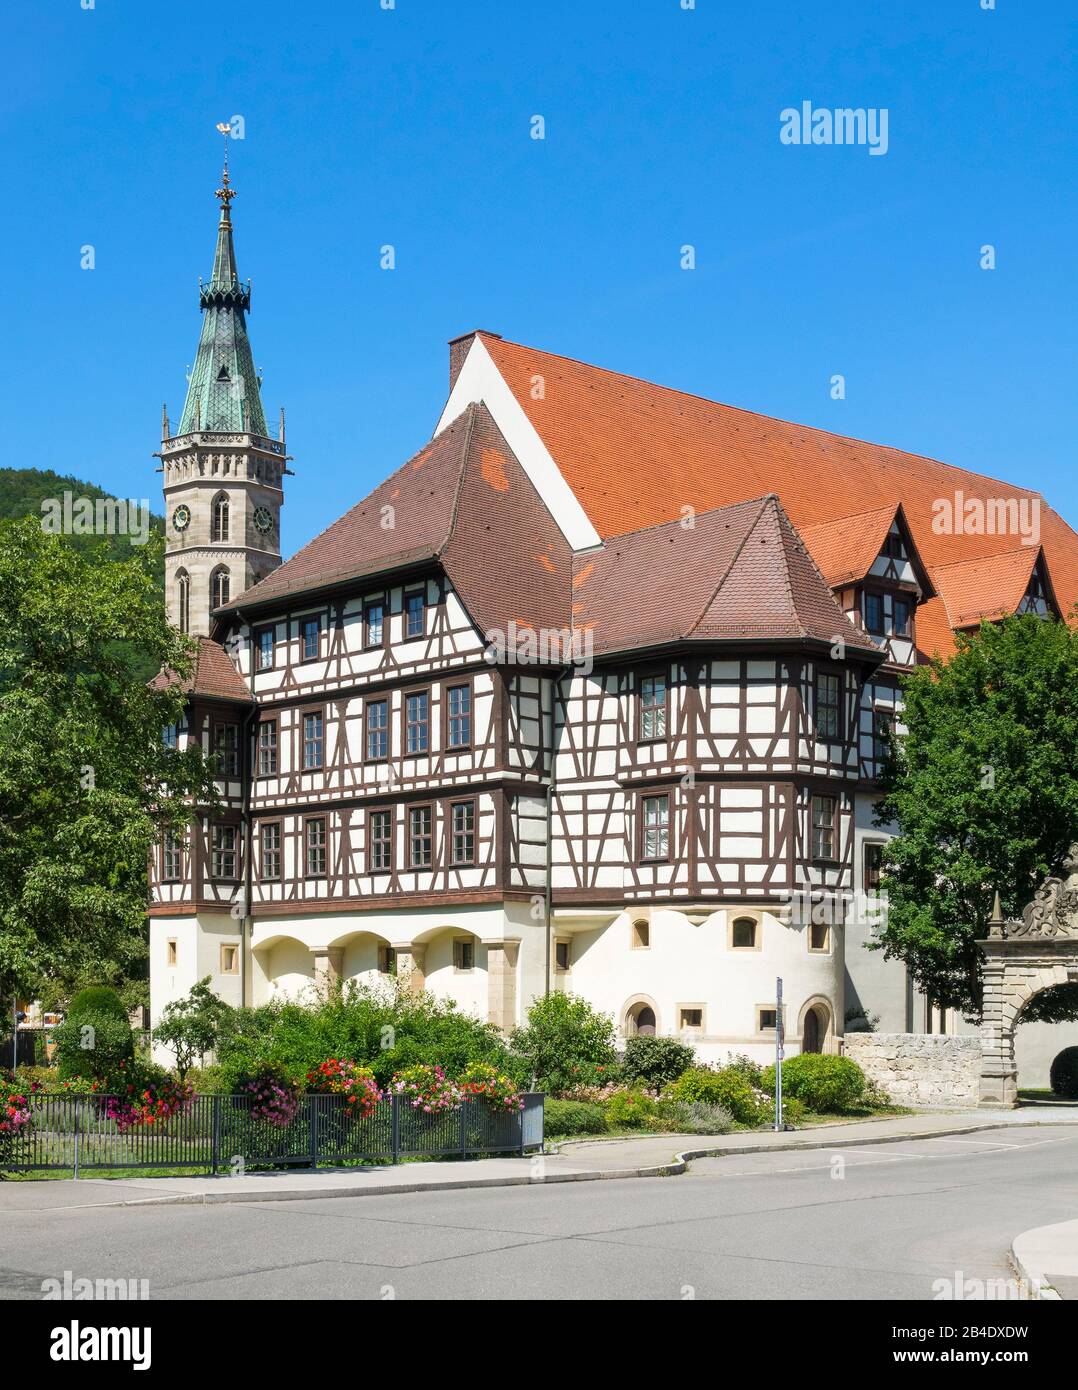 Germania, Baden-Württemberg, Bad Urach, Residenzschloss con mostre del Landesmuseum, edificio a graticcio su un alto pavimento in pietra, dietro la torre dell'Amanduskirche. Foto Stock